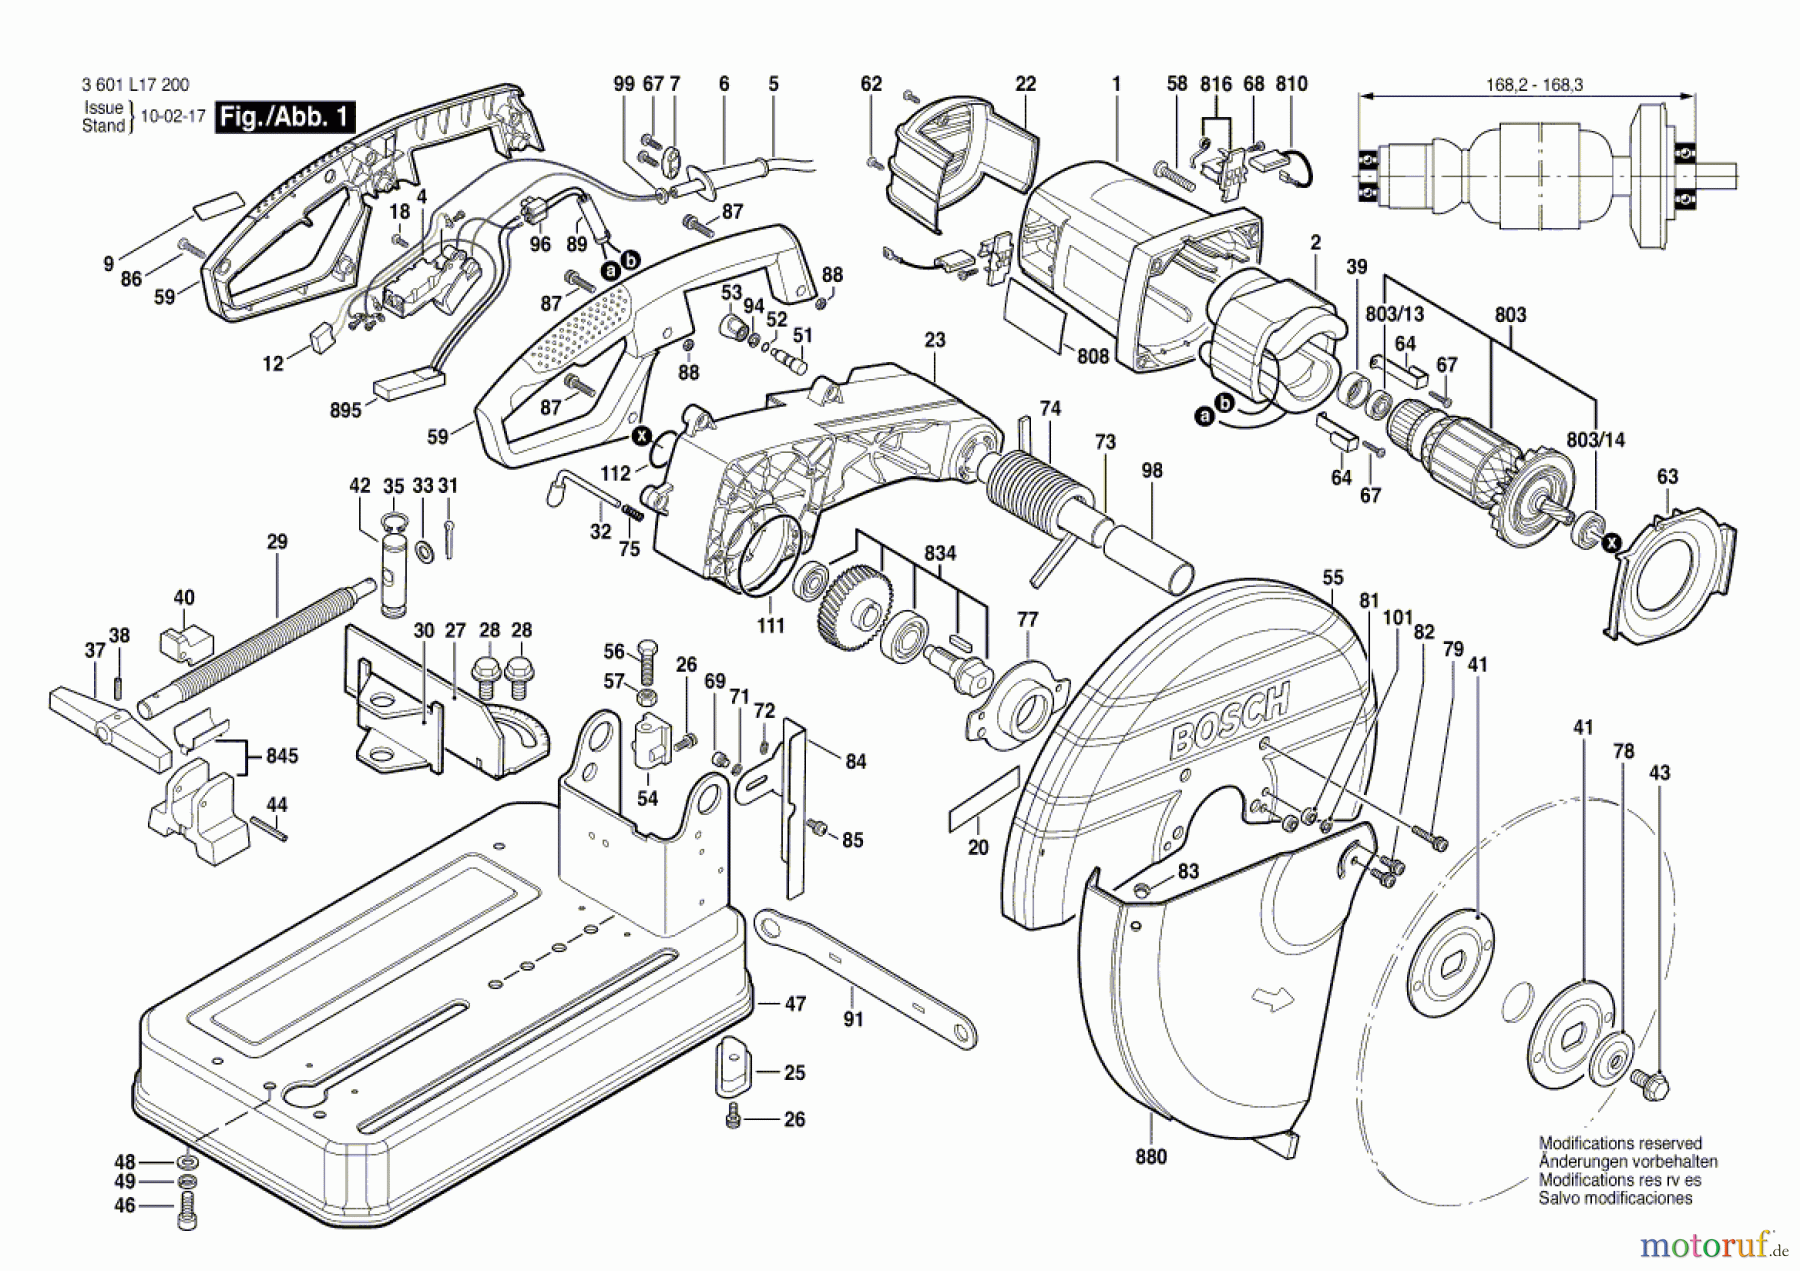  Bosch Werkzeug Trennschleifer GCO 2000 Seite 1